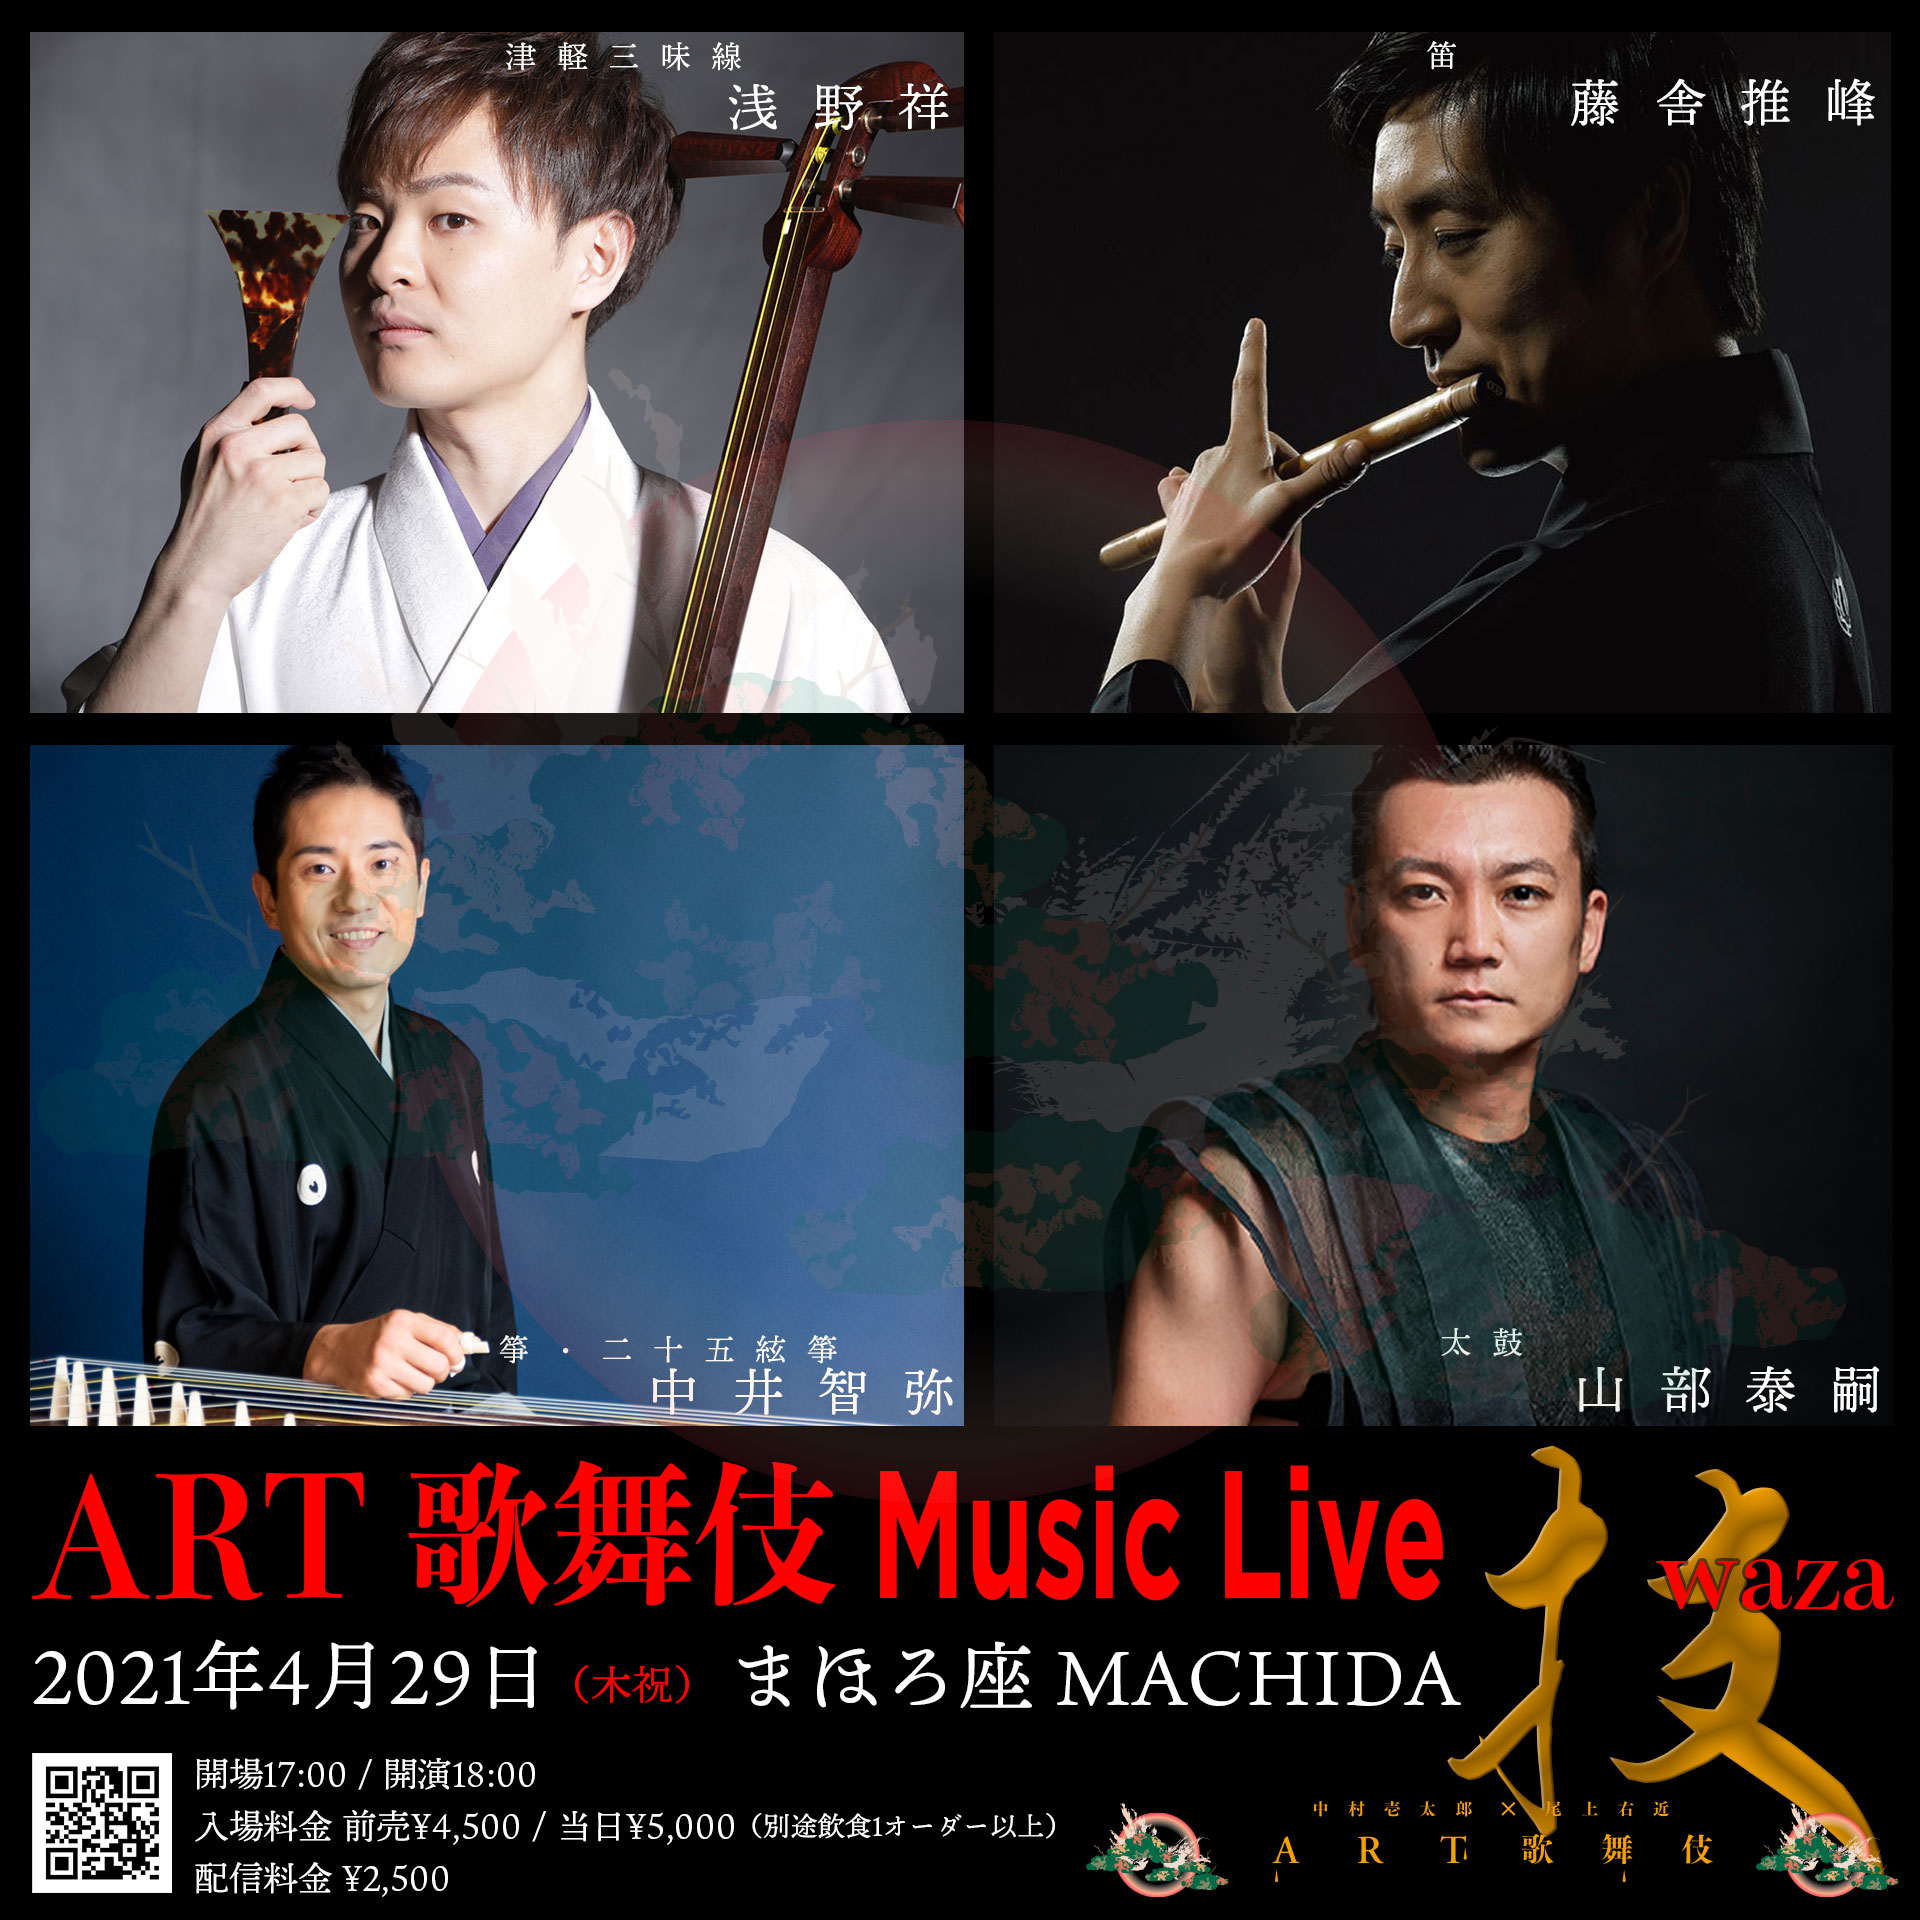 【投げ銭】 ART歌舞伎 Music Live “技”